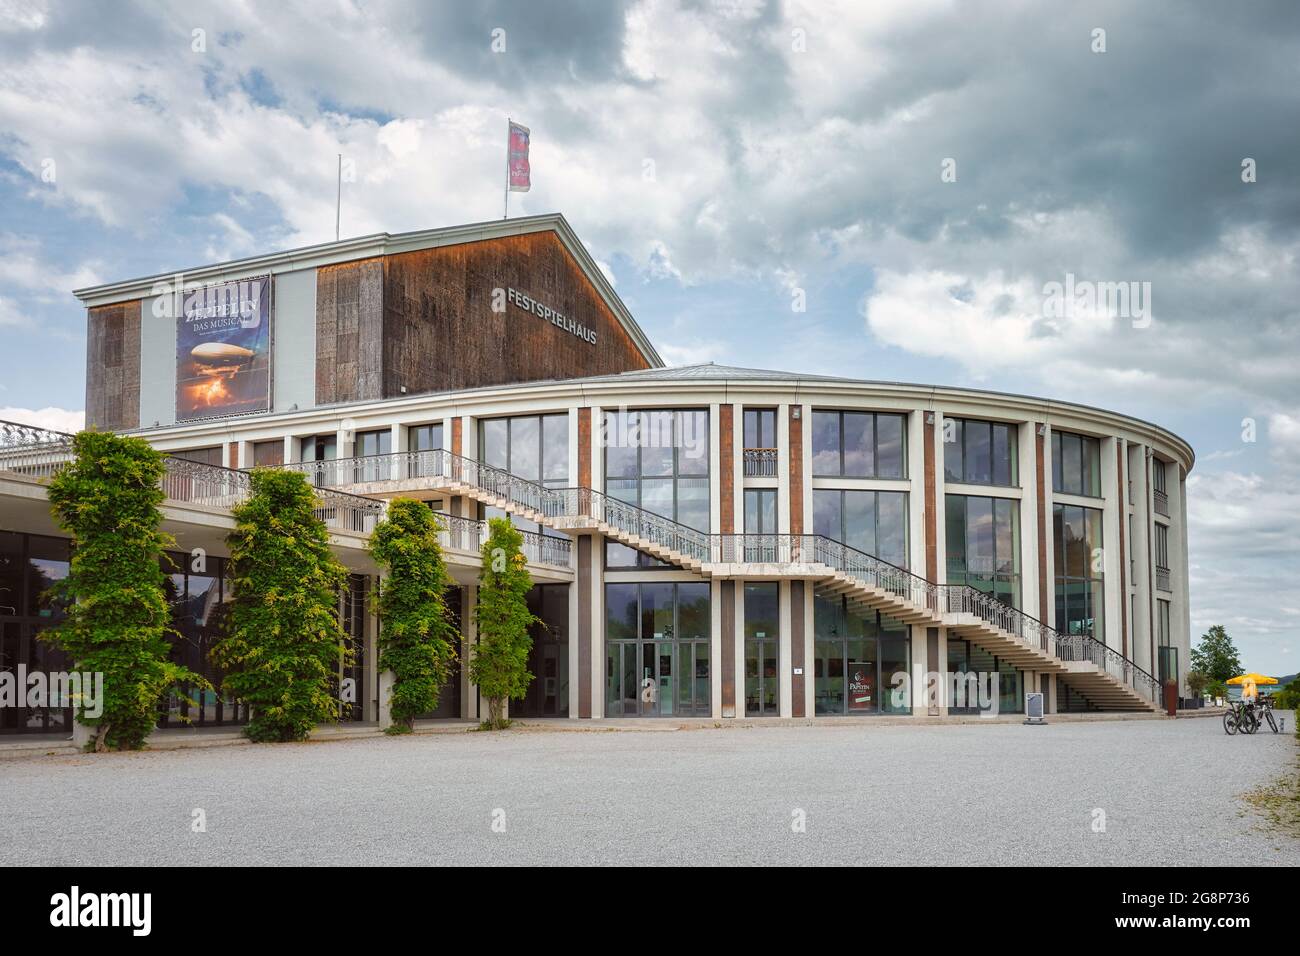 Festspielhaus Neuschwanstein, salle des fêtes à Füssen, Bavière, Allemagne. Théâtre musical sur la rive du lac Forggensee. Banque D'Images